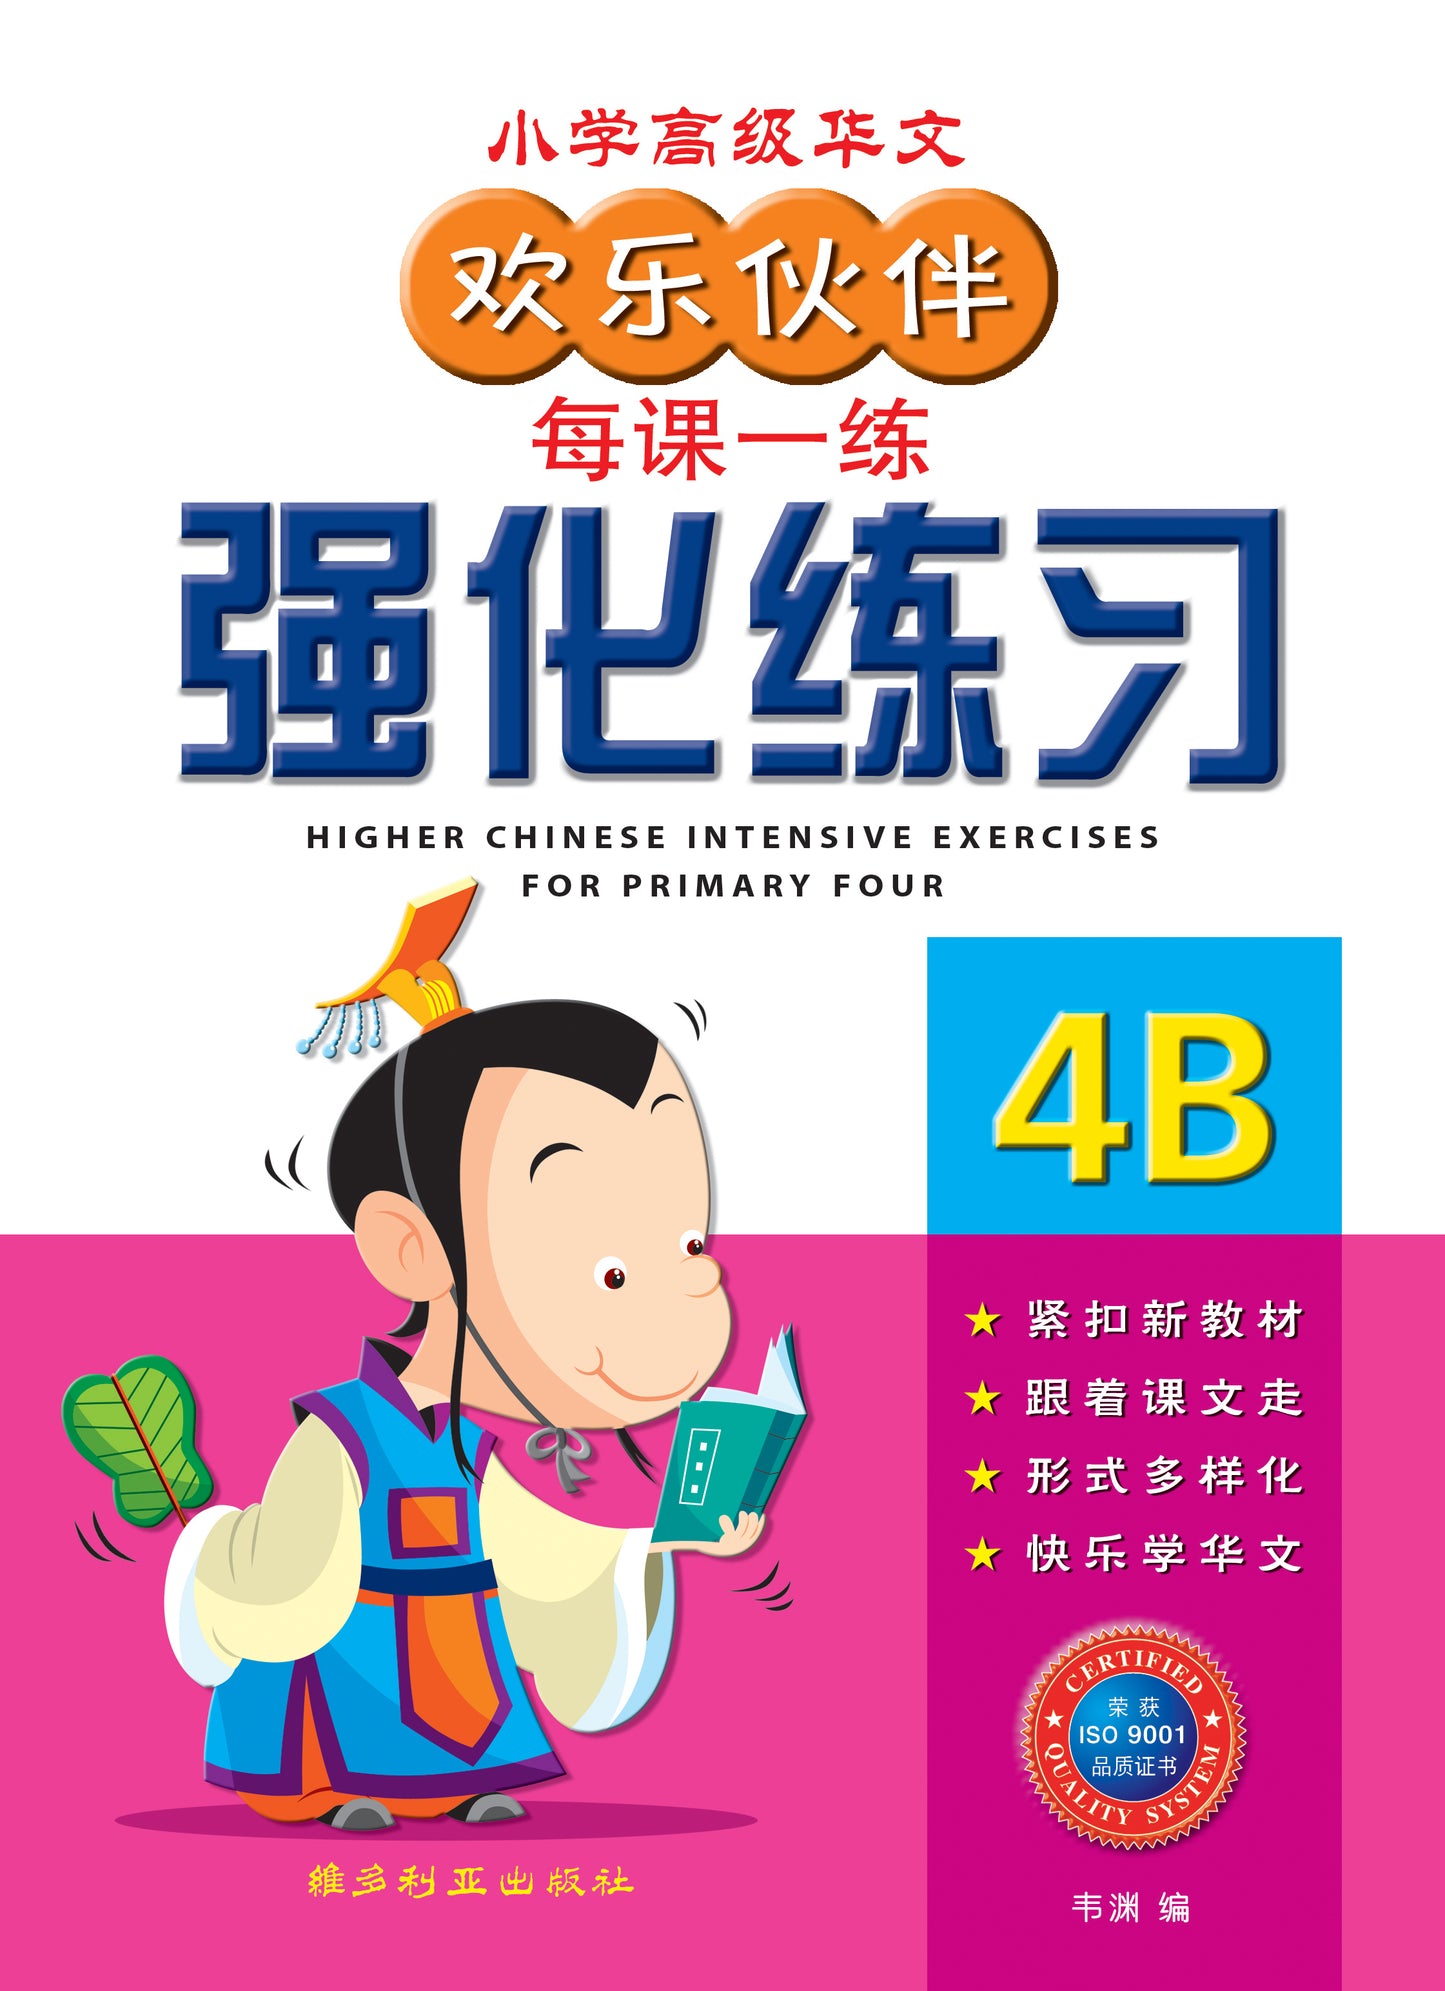 4B 欢乐伙伴高级华文强化练习